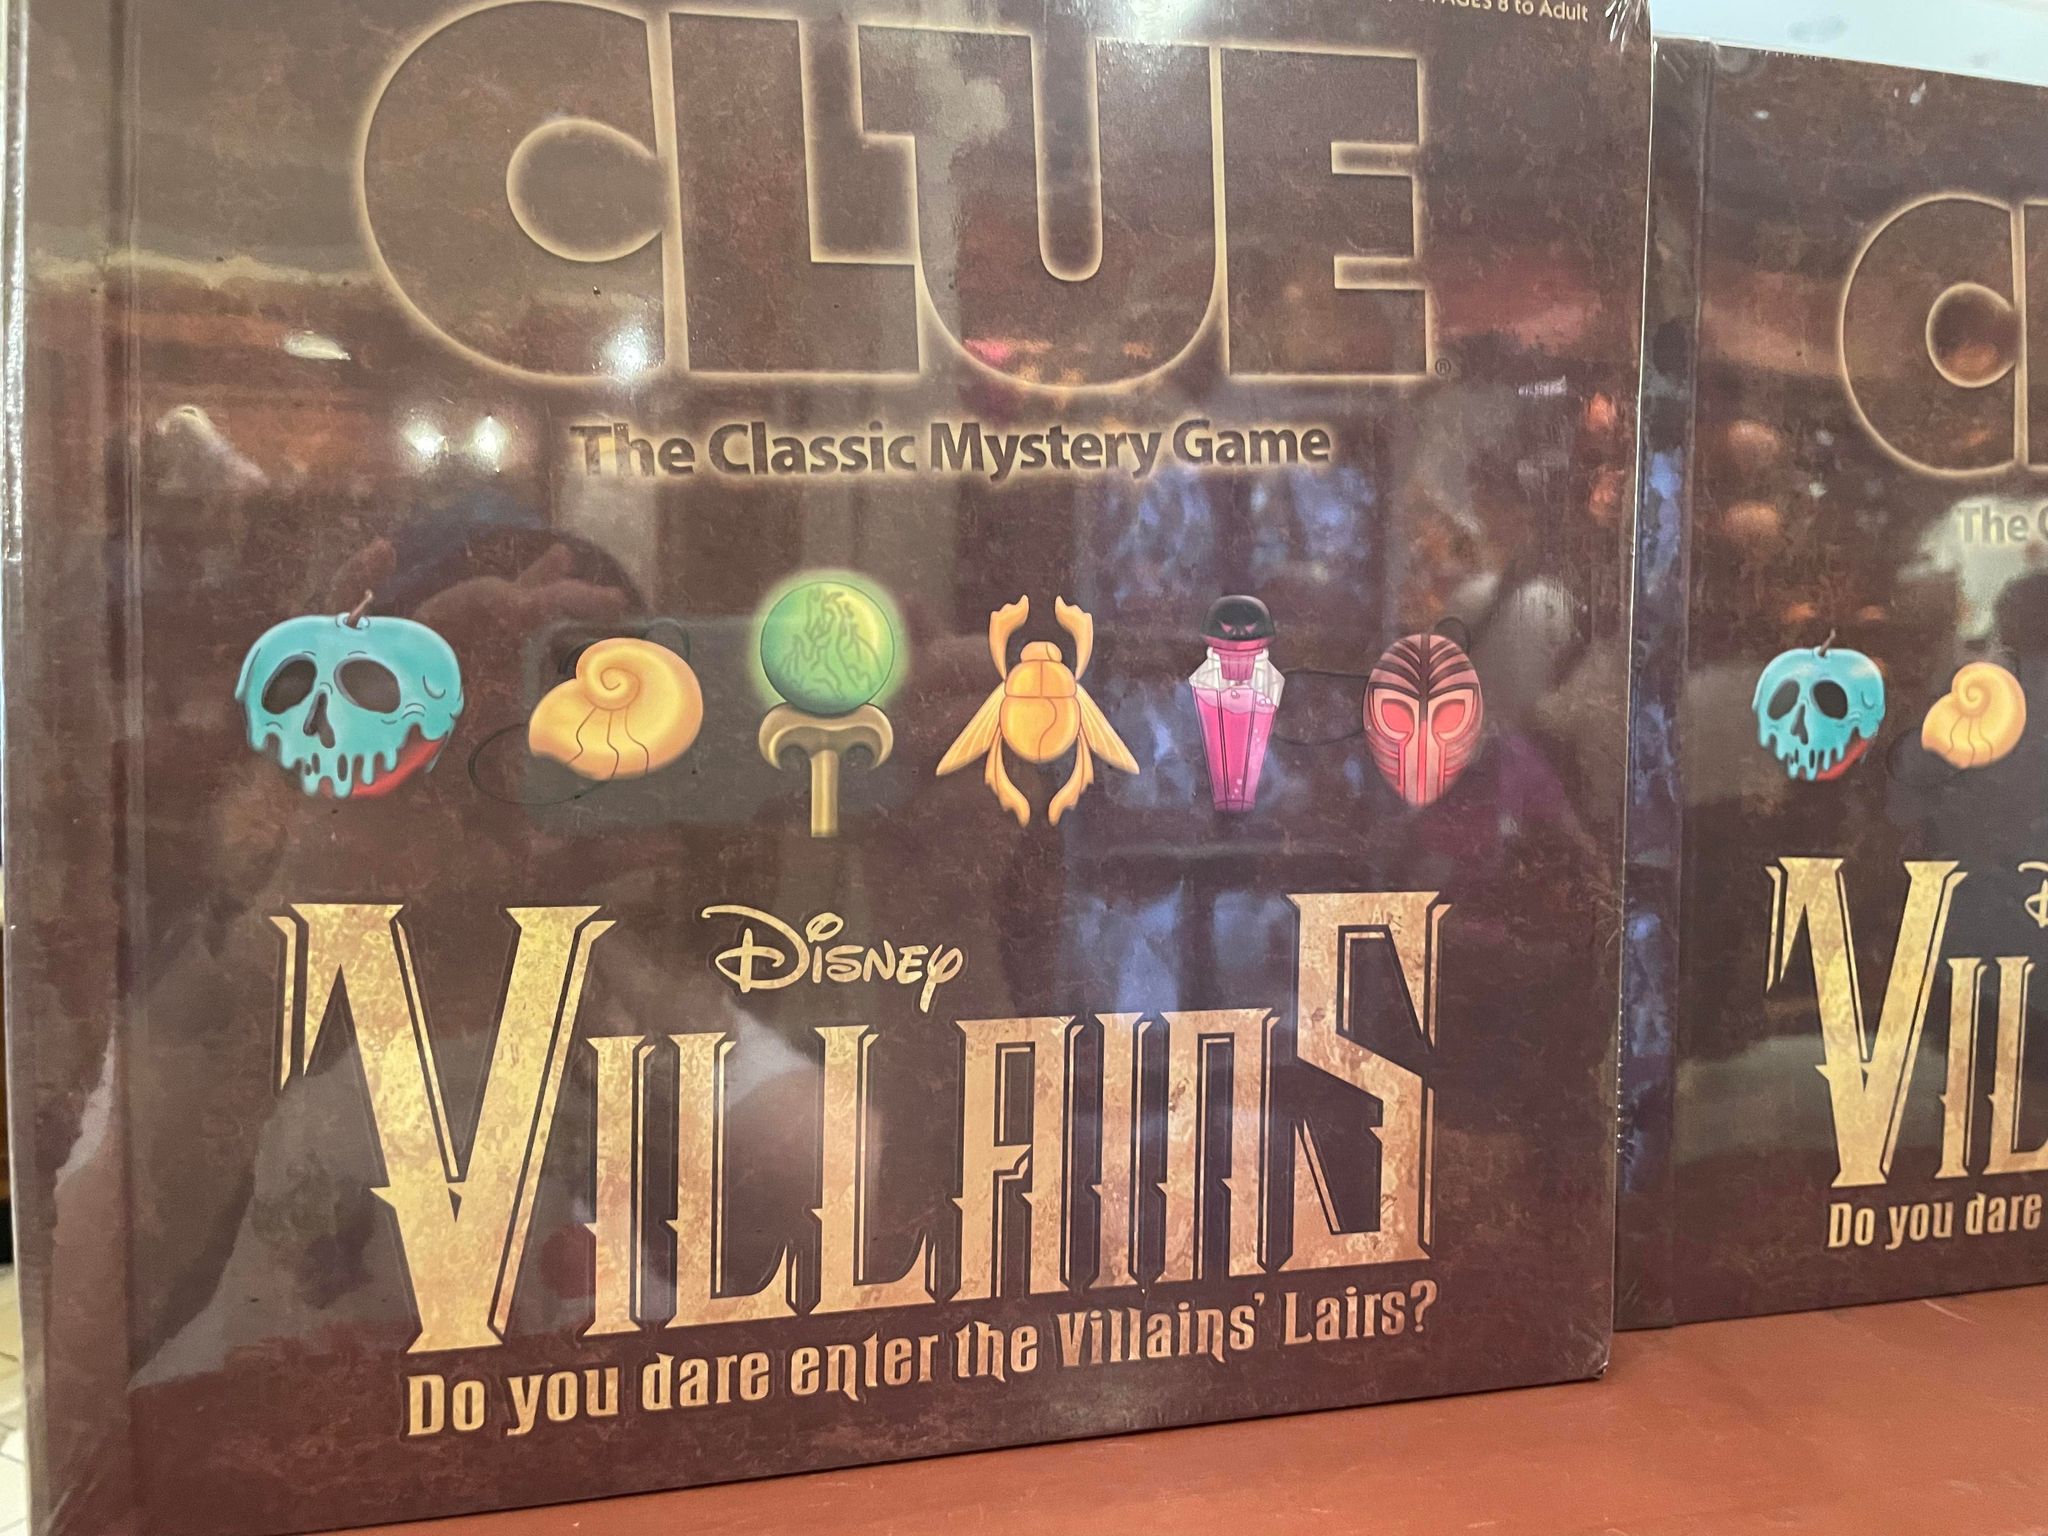 villains clue game